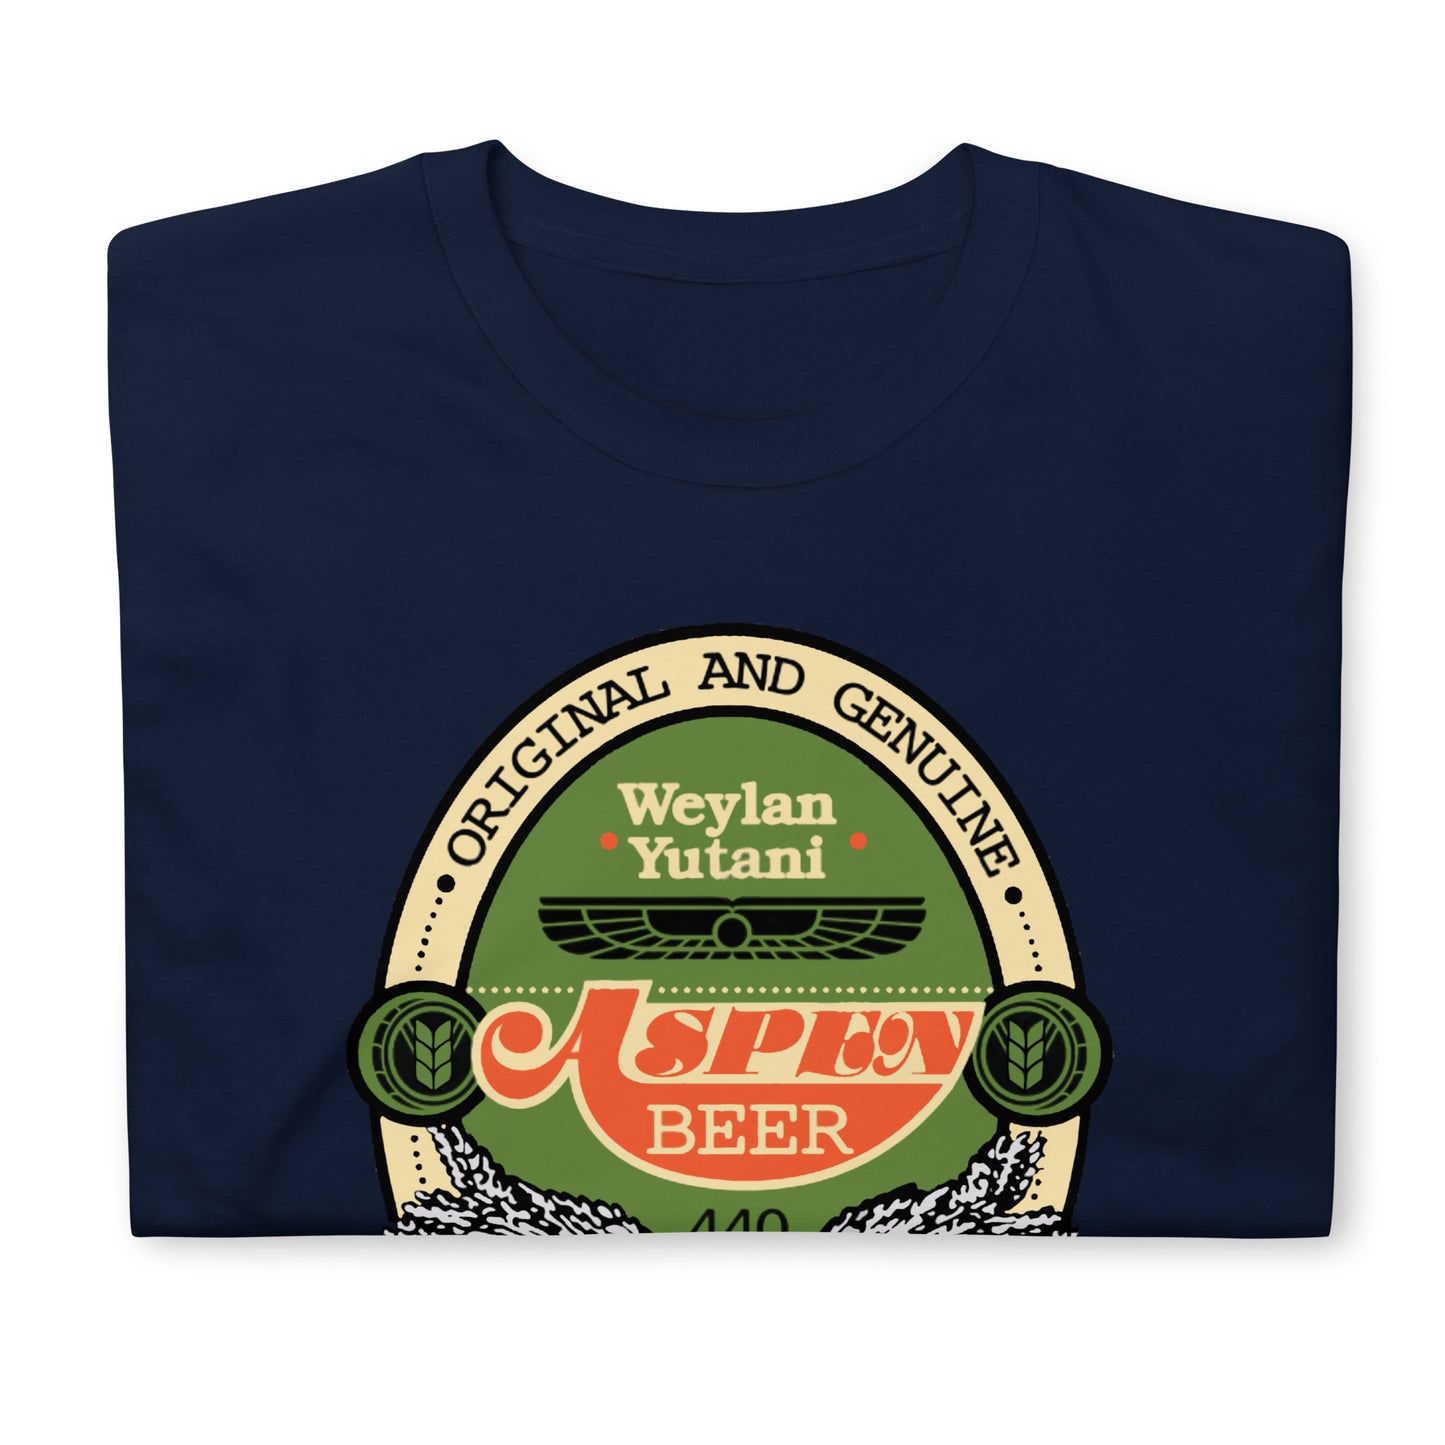 Aspen Beer Unisex T-Shirt